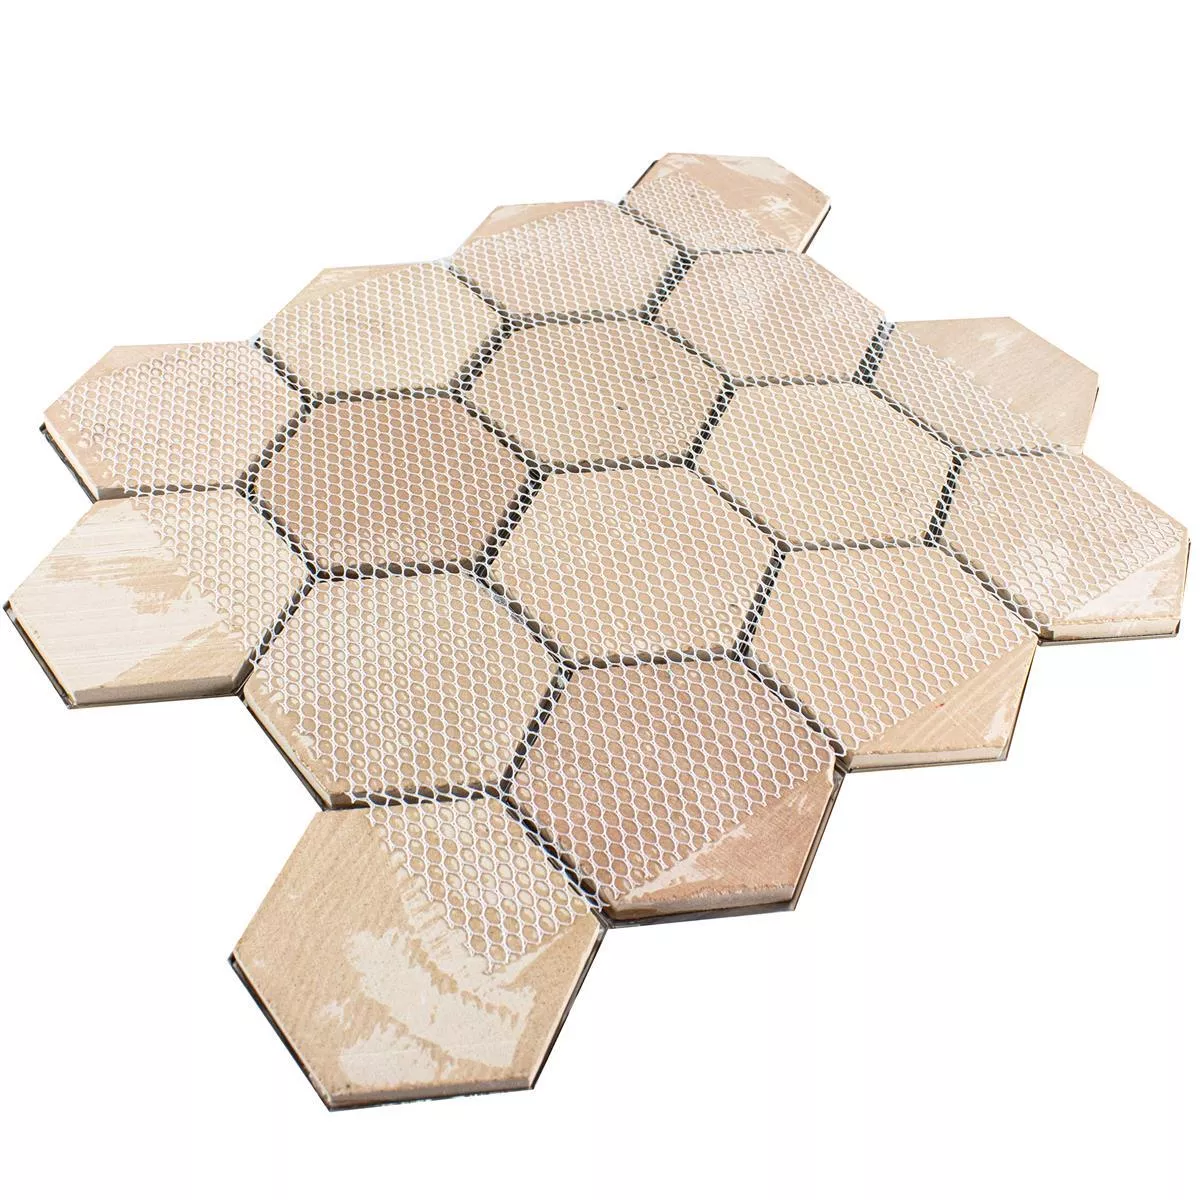 Oțel Inoxidabil Plăci De Mozaic Durango Hexagon 3D Maro